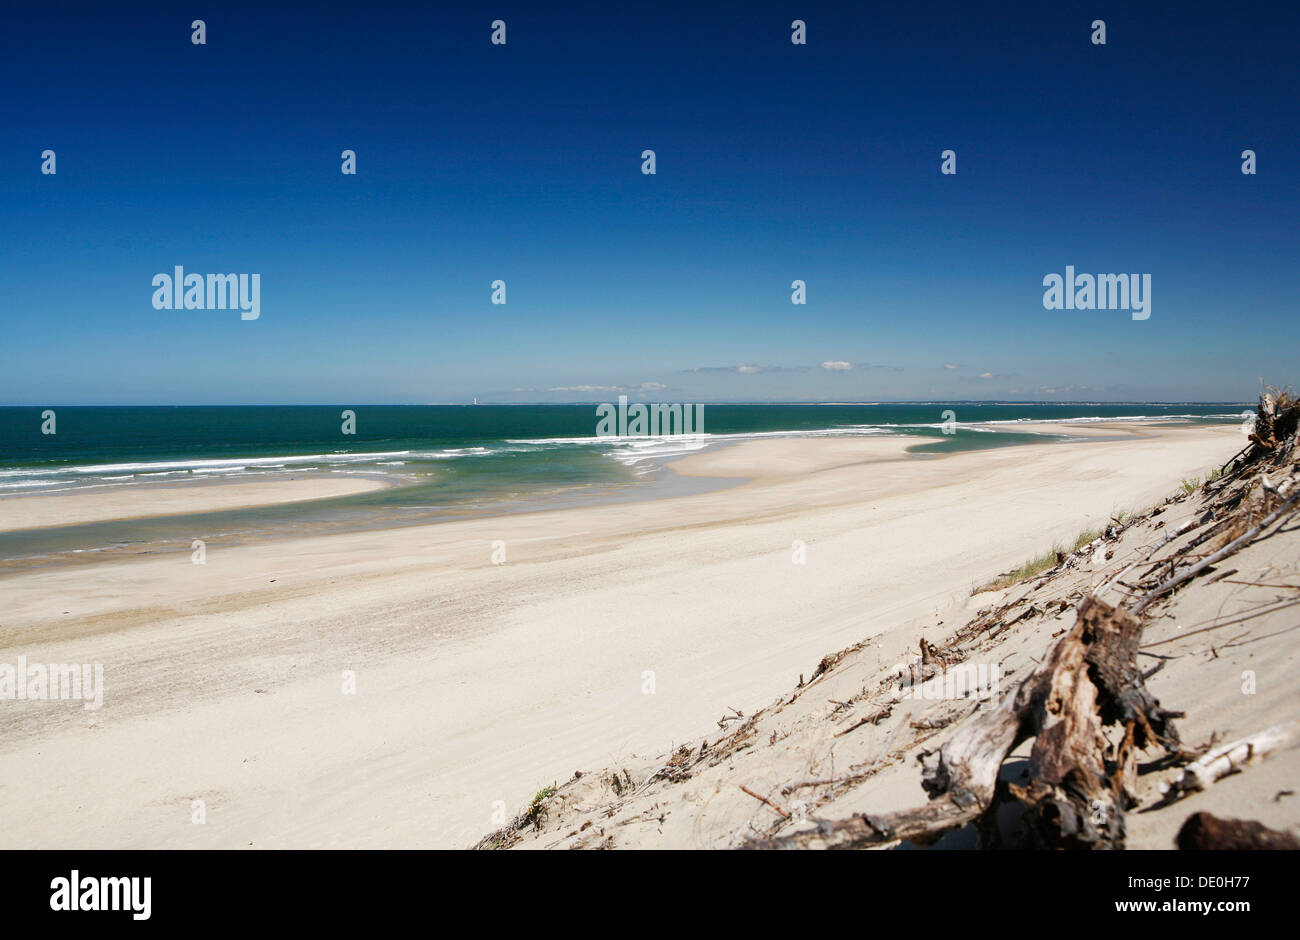 Spiaggia, costa atlantica presso Soulac-sur-mer, regione Aquitania, gironde department, Francia, Europa Foto Stock